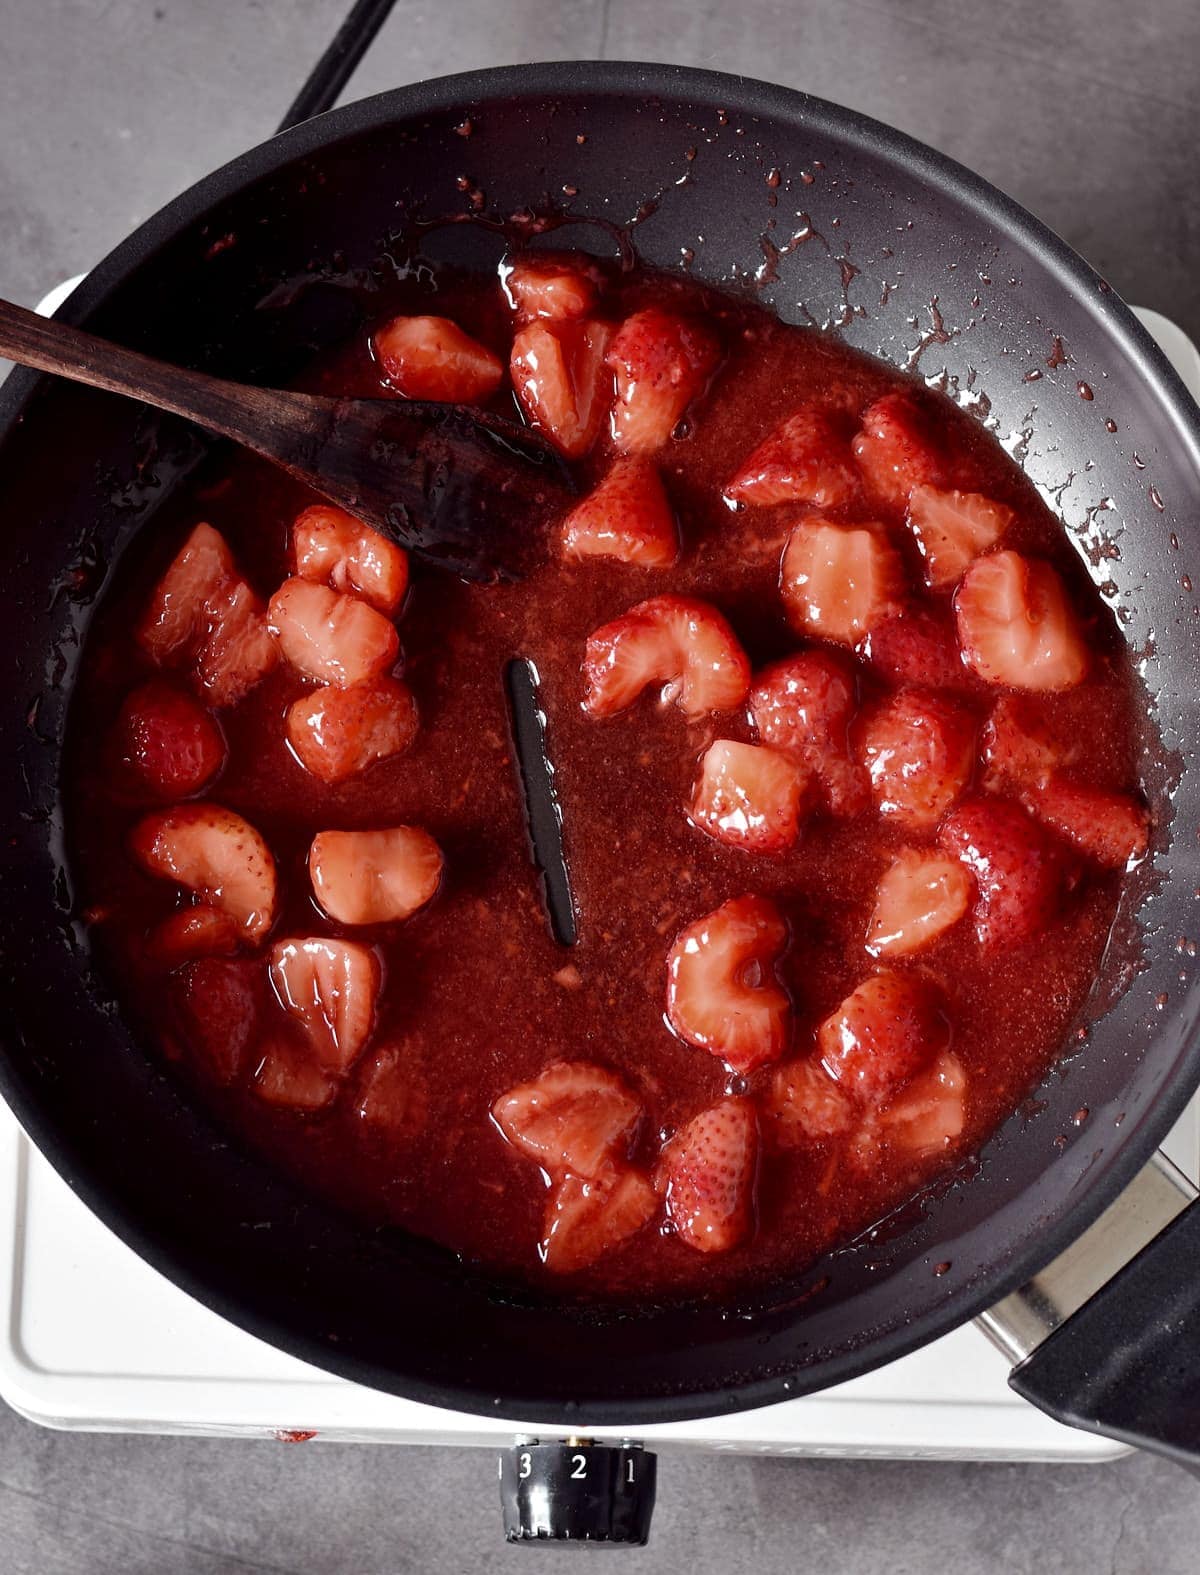 Eingedicktes Erdbeer Kompott mit Holzöffel in einer schwarzen Pfanne